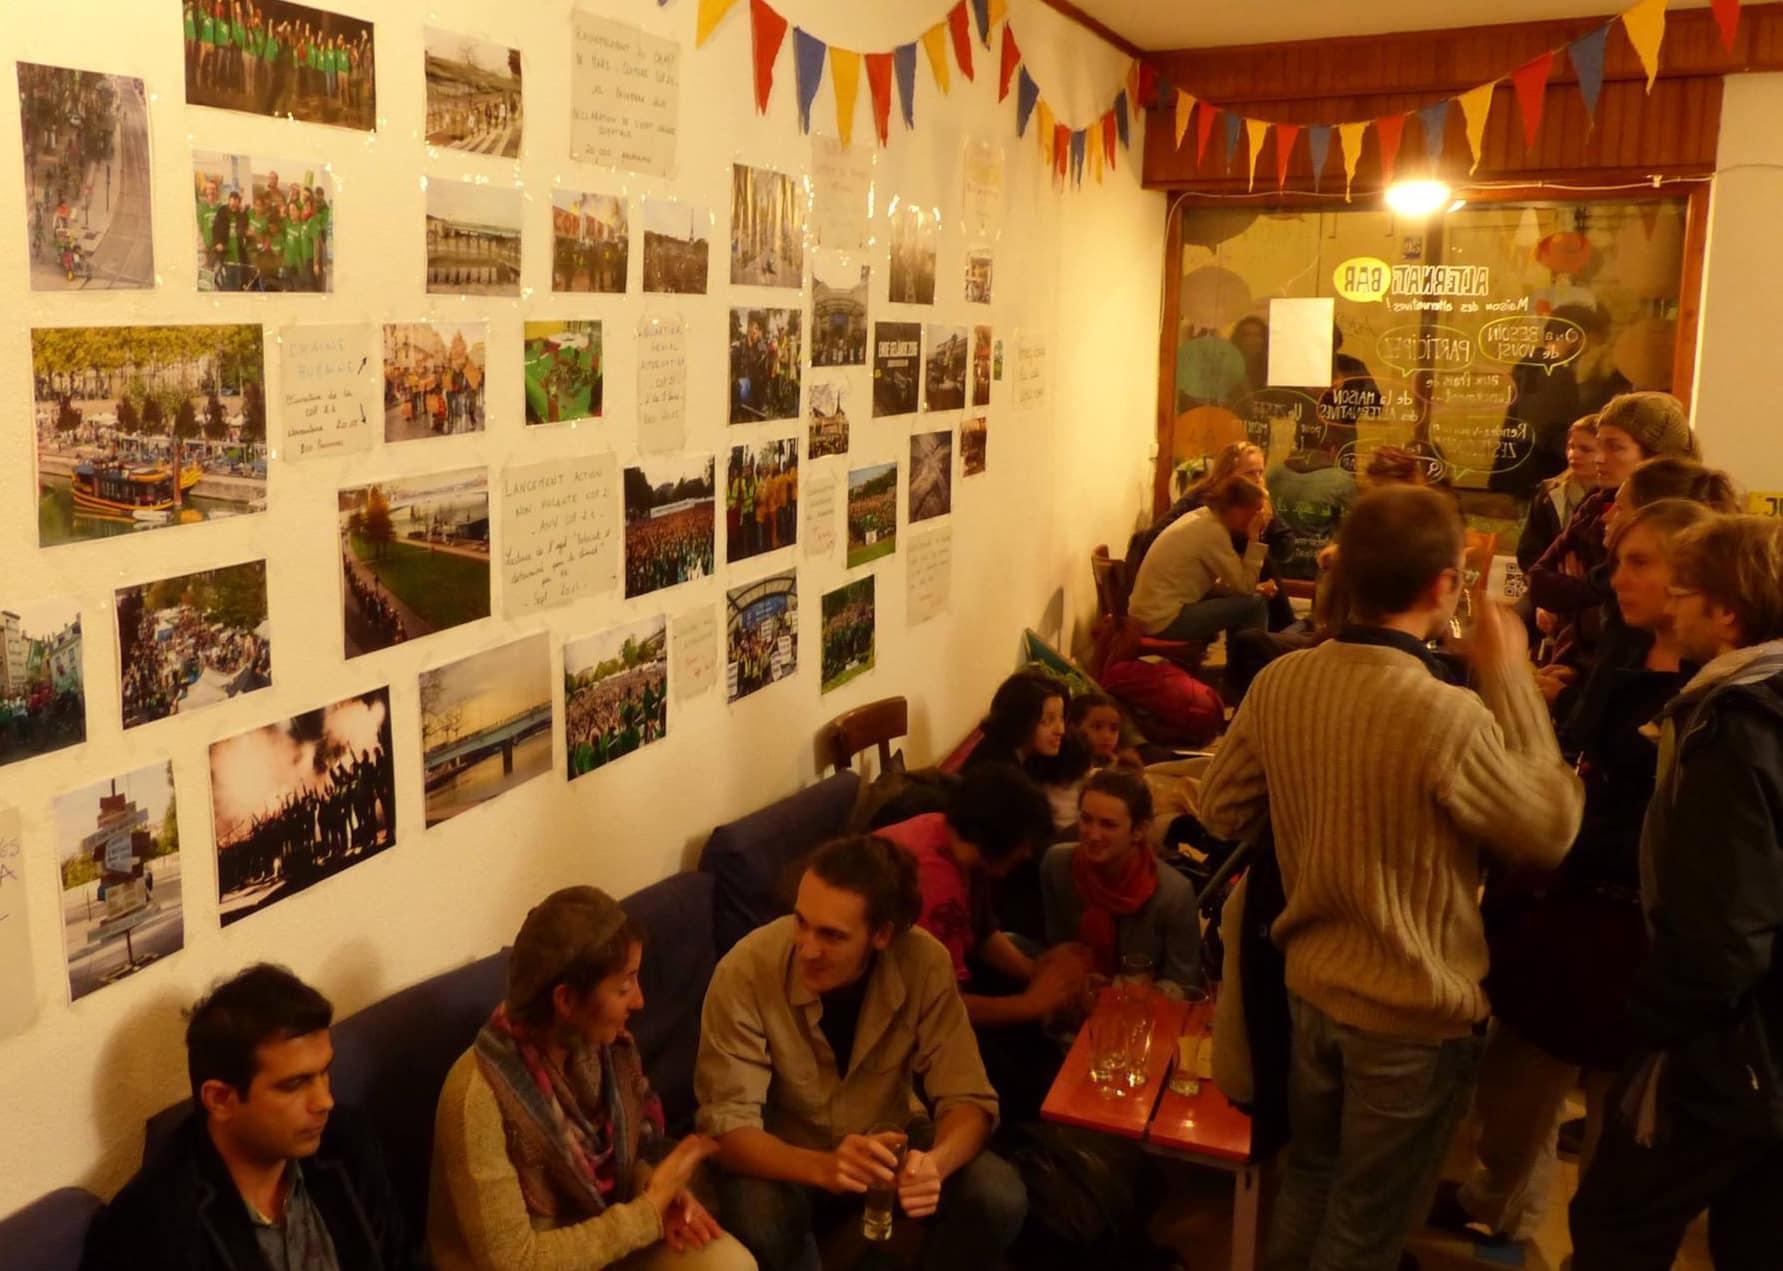 A l'intérieur du bar, l'histoire du mouvement "Alternatiba" est racontée à travers des photos accrochées aux murs.